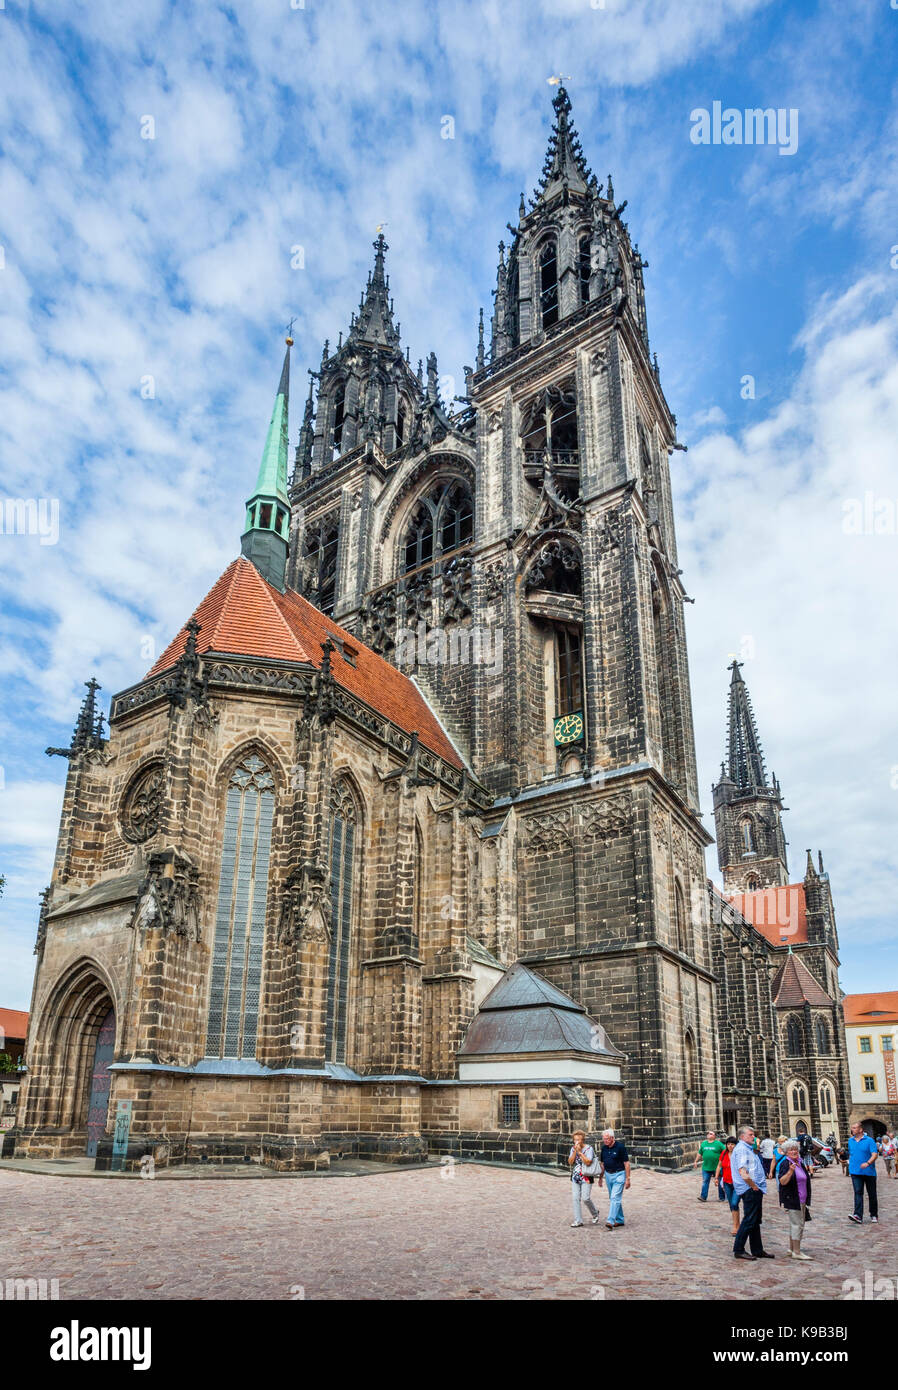 Alemania, Sajonia, Meissen, La Plaza de la Catedral, vista de la Catedral de Meissen, la fachada occidental con capilla del príncipe en la colina del castillo Foto de stock